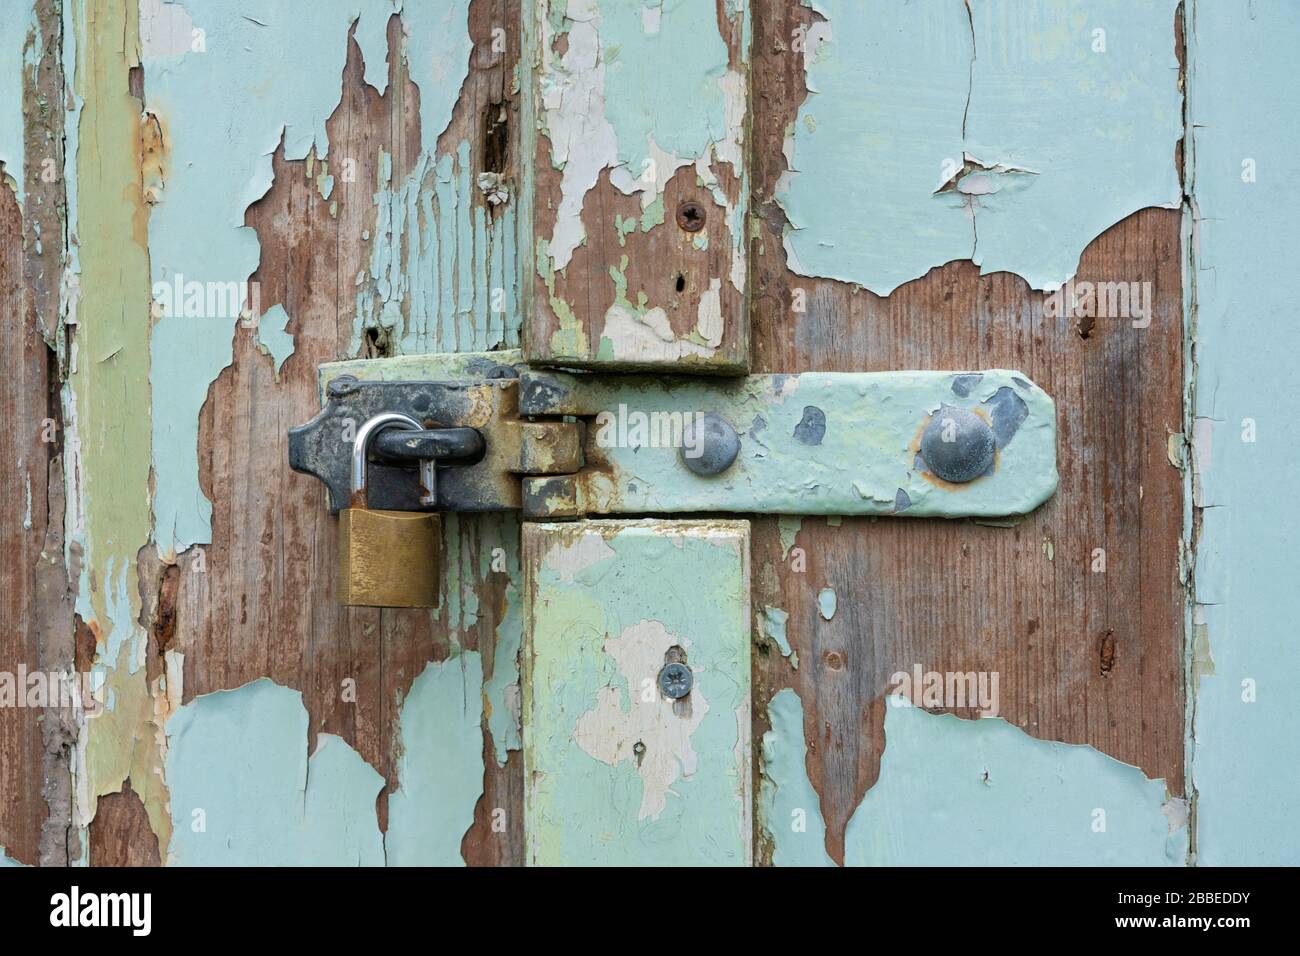 Cadenas déverrouillé sur l'ancienne porte en bois avec peinture écaillée à Newport, Pembrokeshire. Pays de Galles. ROYAUME-UNI Banque D'Images